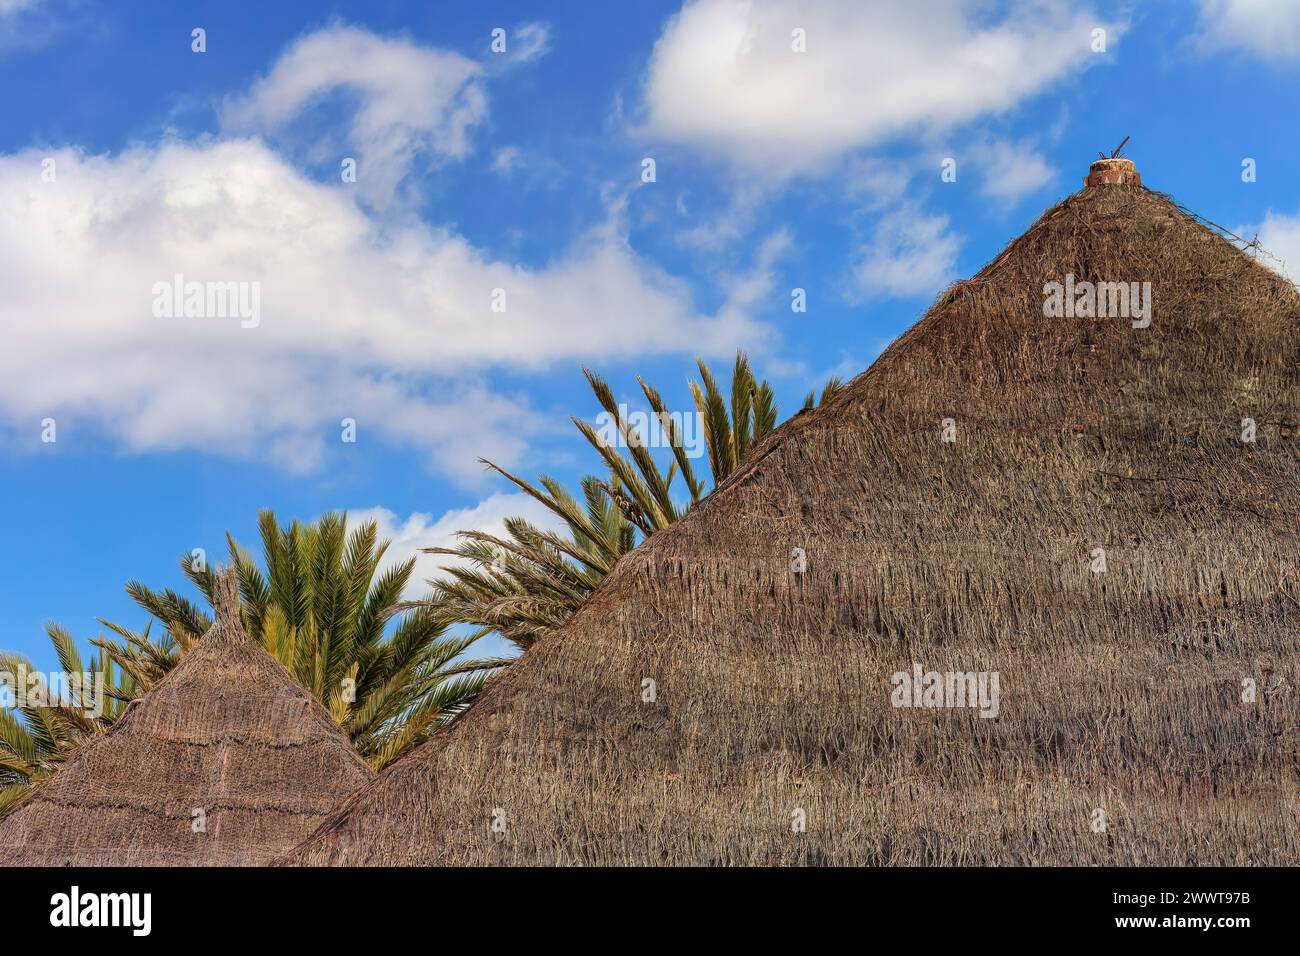 Toits en rotin et palmiers sous un ciel nuageux bleu à Tenerife. Espagne. Banque D'Images